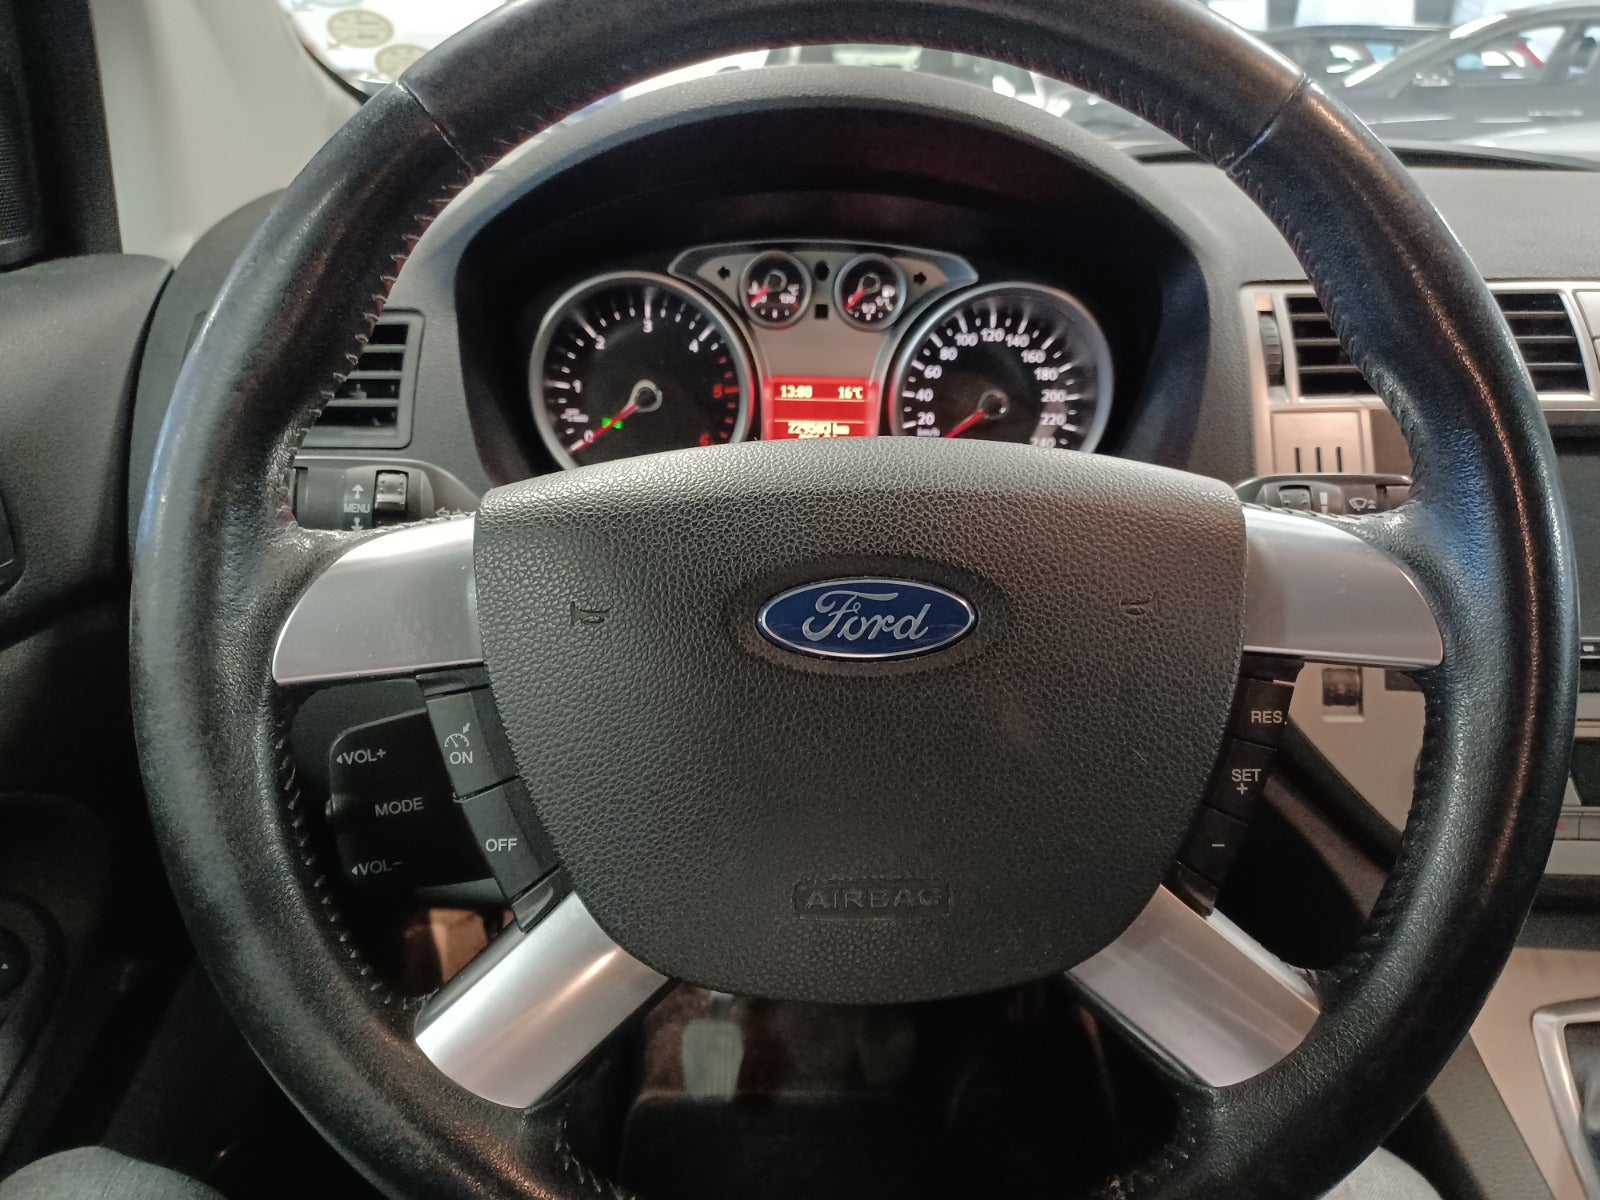 Ford Kuga 2009